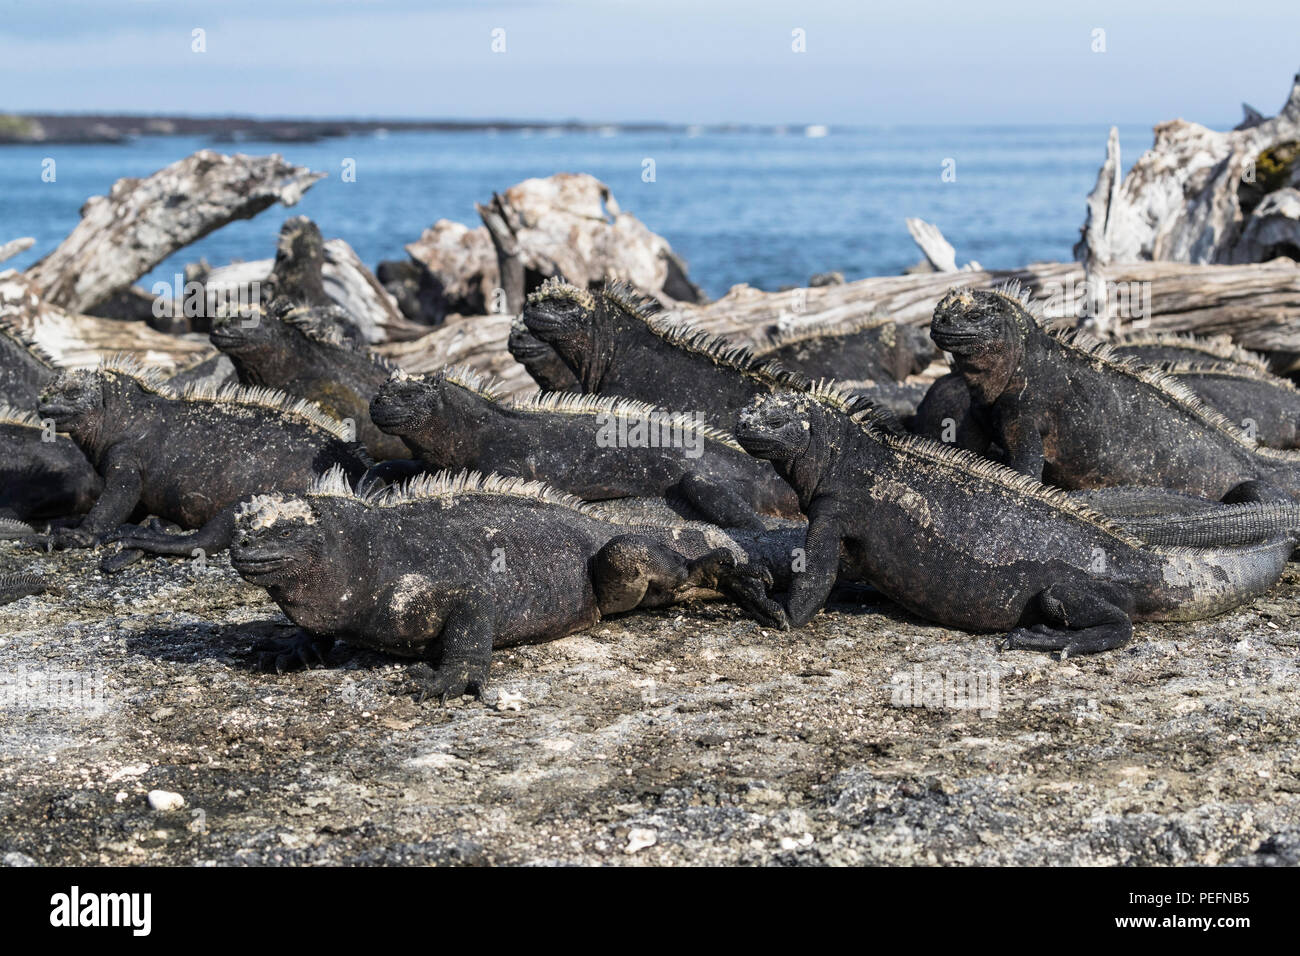 La iguana marina de Galápagos endémicas, Amblyrhynchus cristatus, peregrinos en la Isla Fernandina, Galápagos. Foto de stock